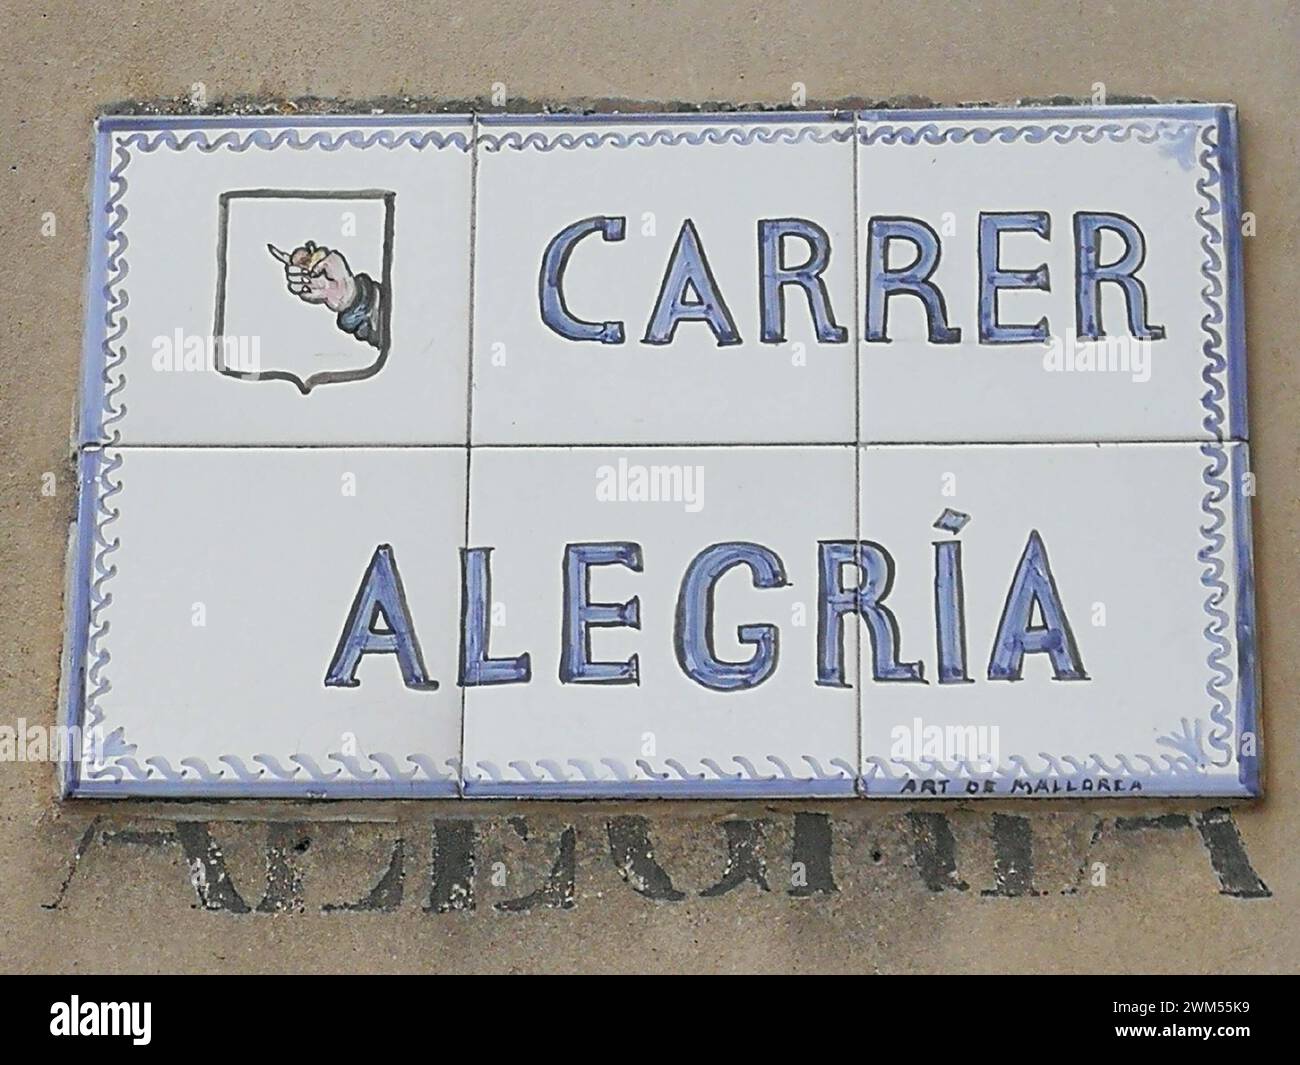 Carrer alegría - Street of Joy in Manacor, Mallorca Stock Photo